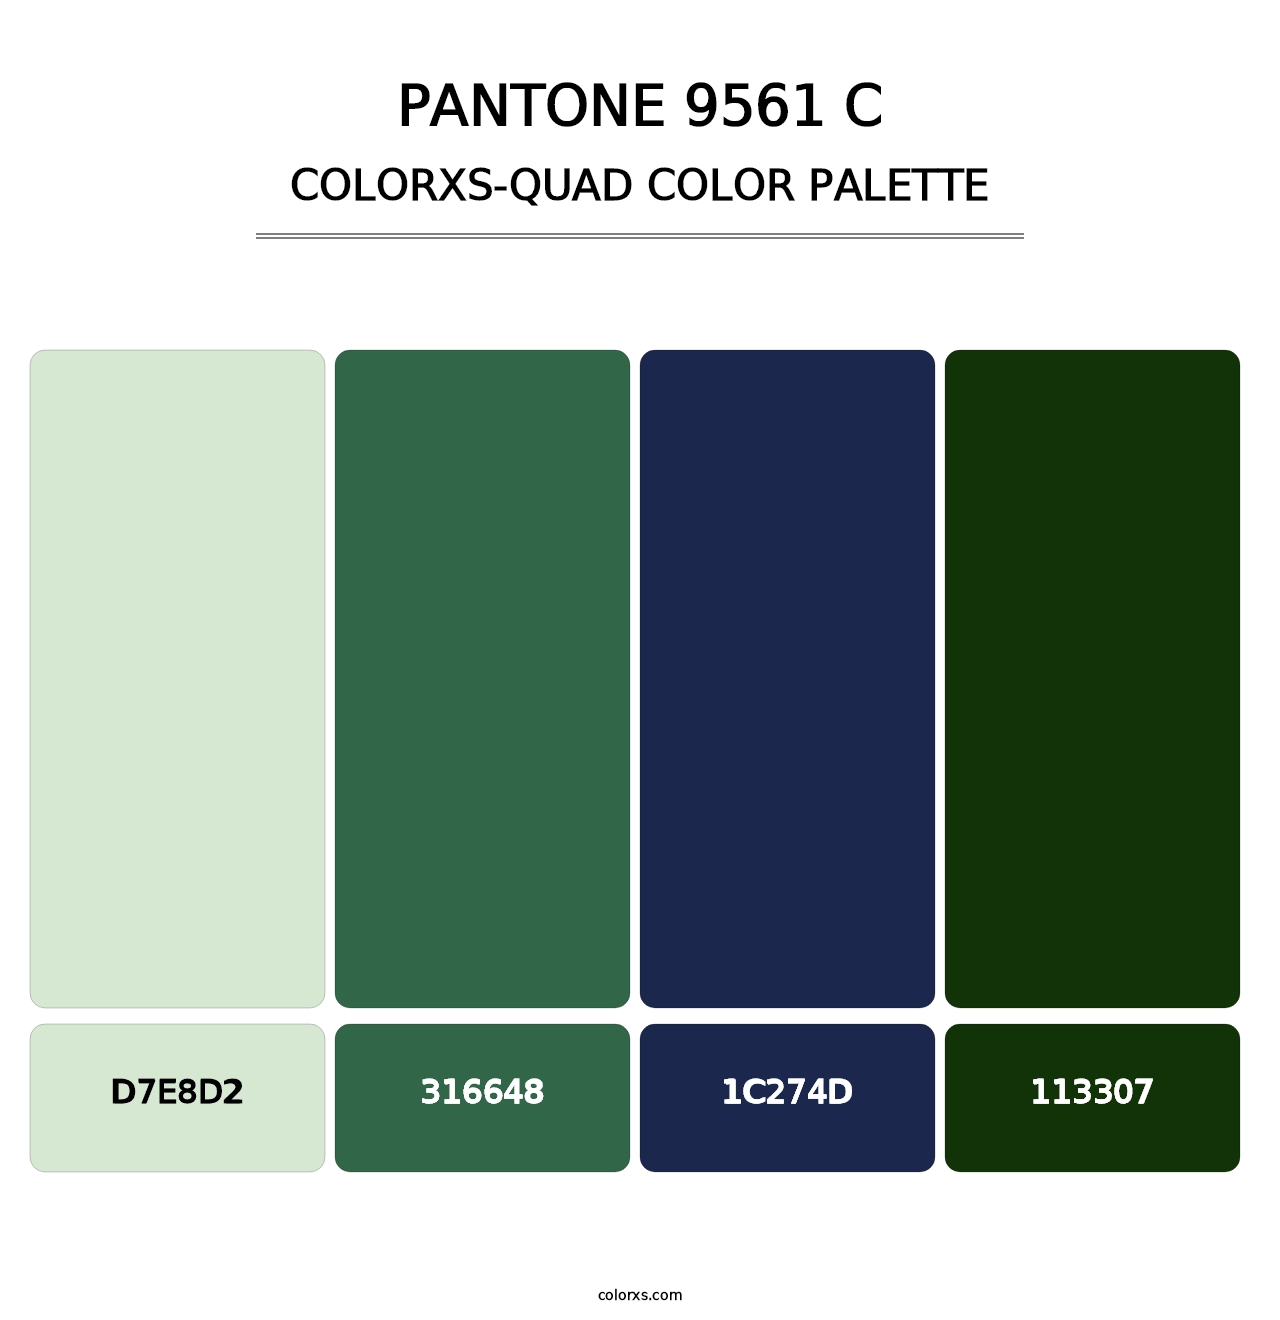 PANTONE 9561 C - Colorxs Quad Palette